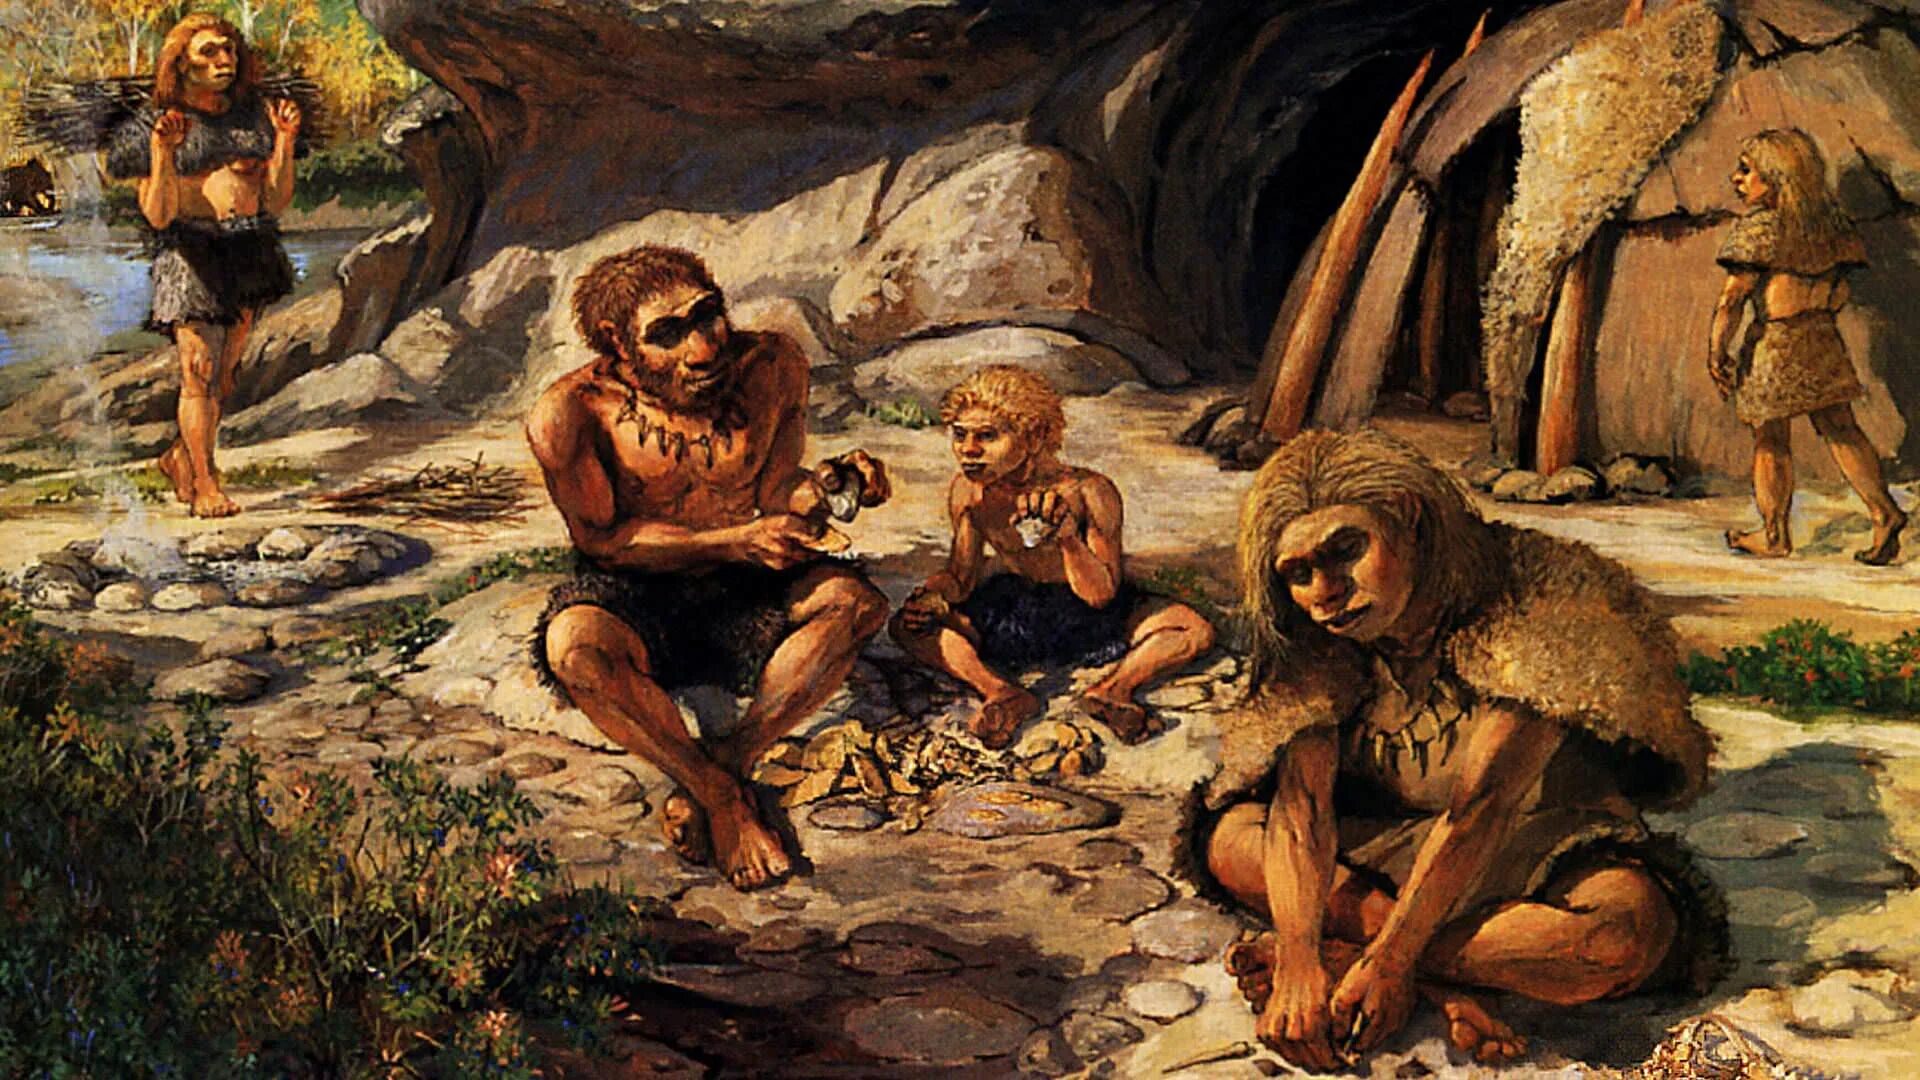 Древние общины древних людей. Каменный век неандертальцы. Древние люди - Палеоантропы, неандертальцы. Неандерталец палеолит. Палеолит homo habilis.